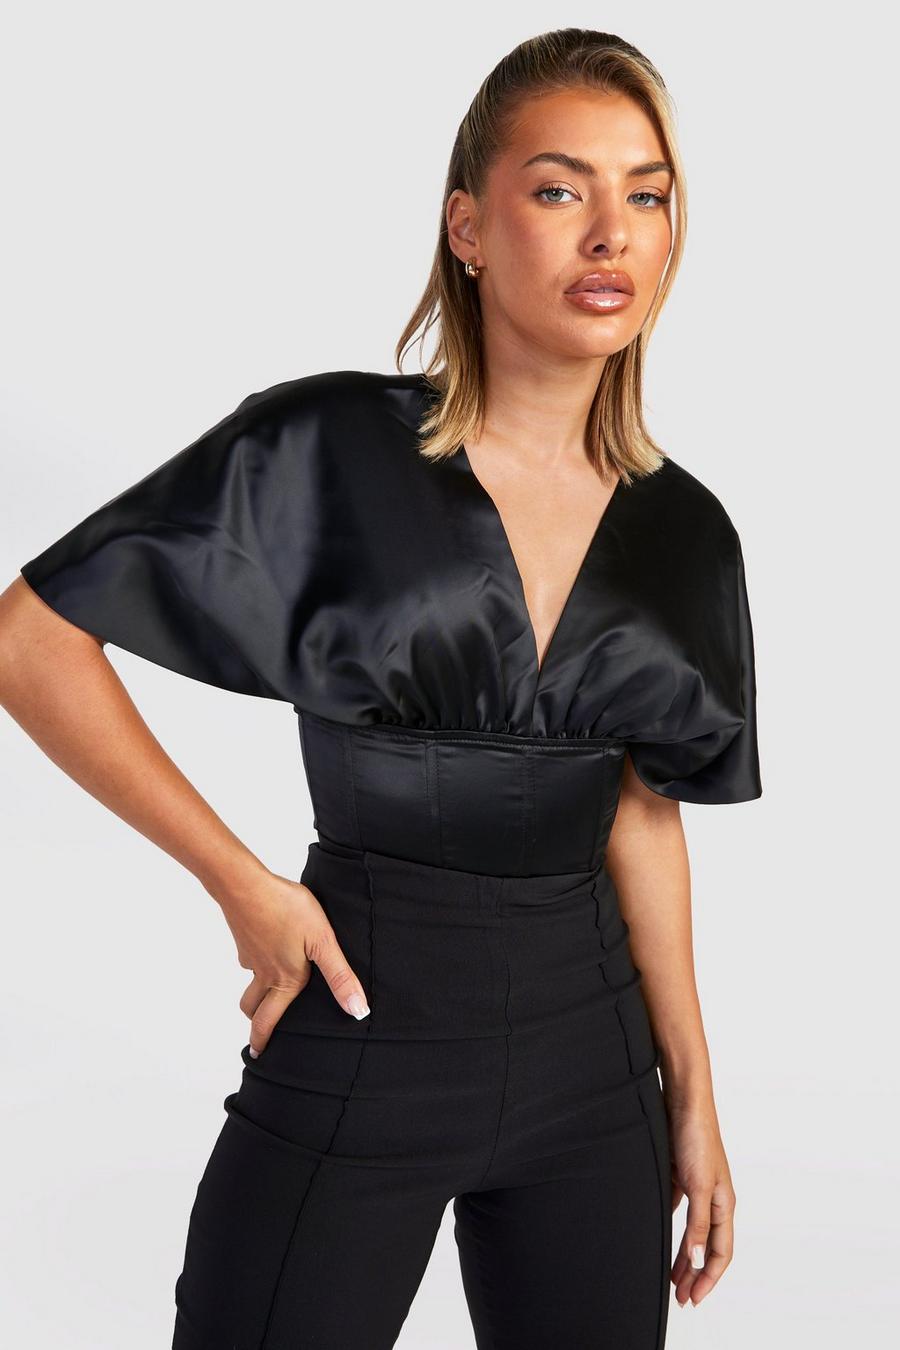 https://media.boohoo.com/i/boohoo/gzz25576_black_xl/female-black-satin-off-the-shoulder-corset-bodysuit/?w=900&qlt=default&fmt.jp2.qlt=70&fmt=auto&sm=fit